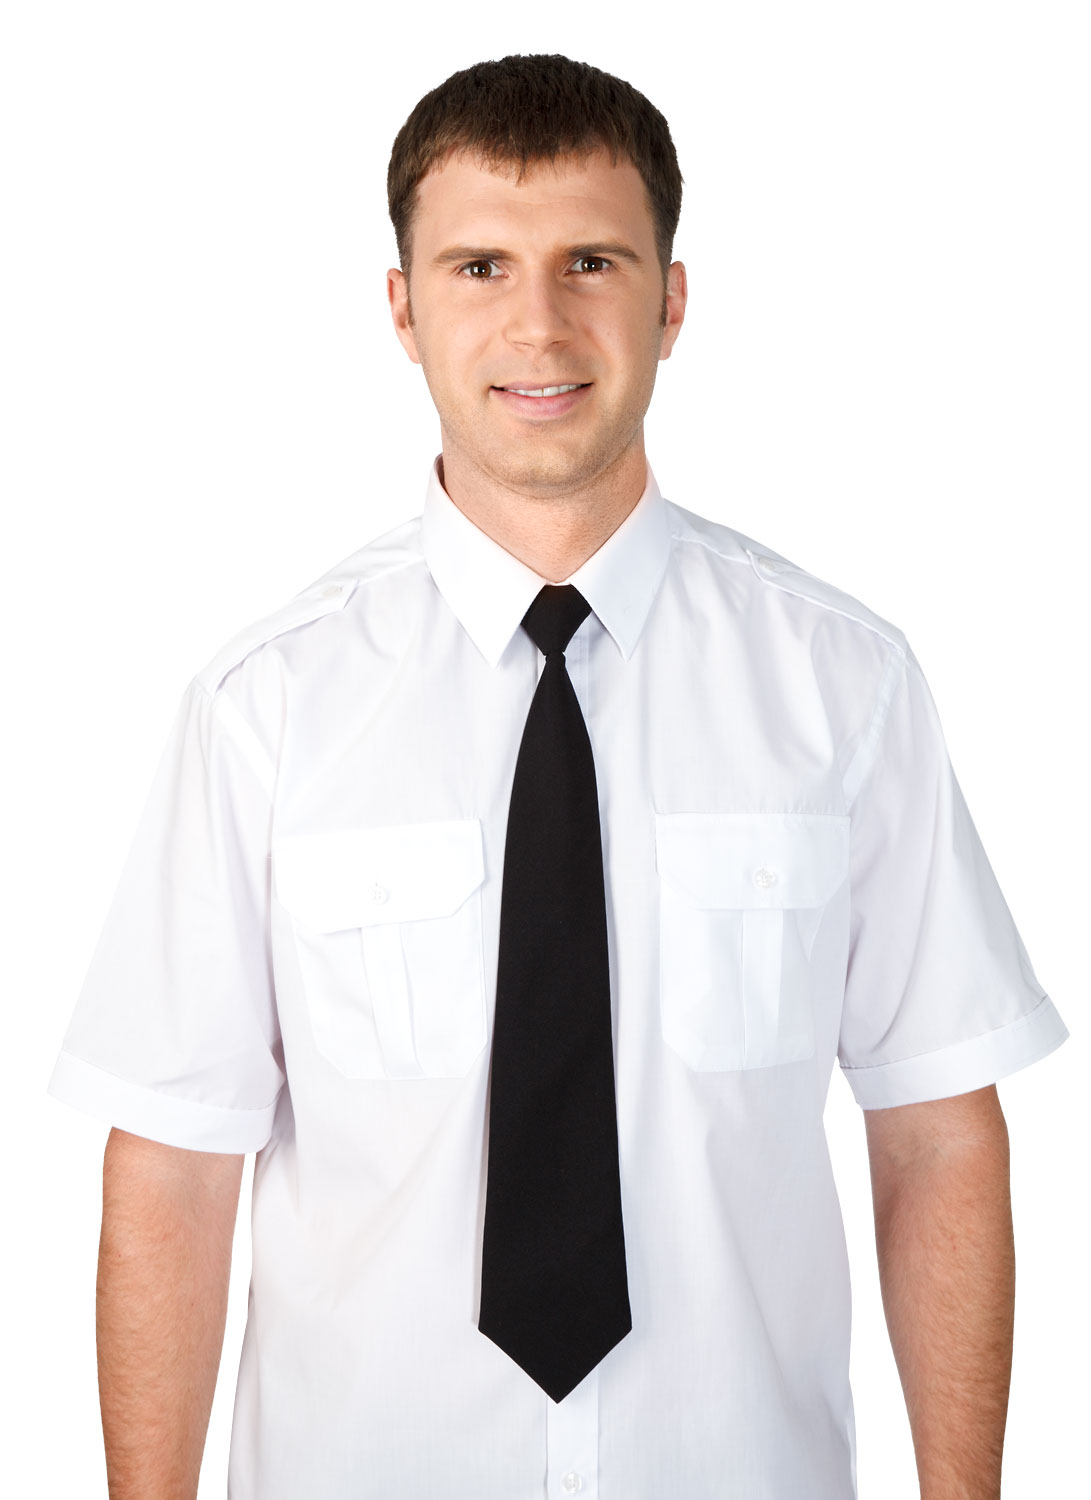 Белая рубашка с галстуком для